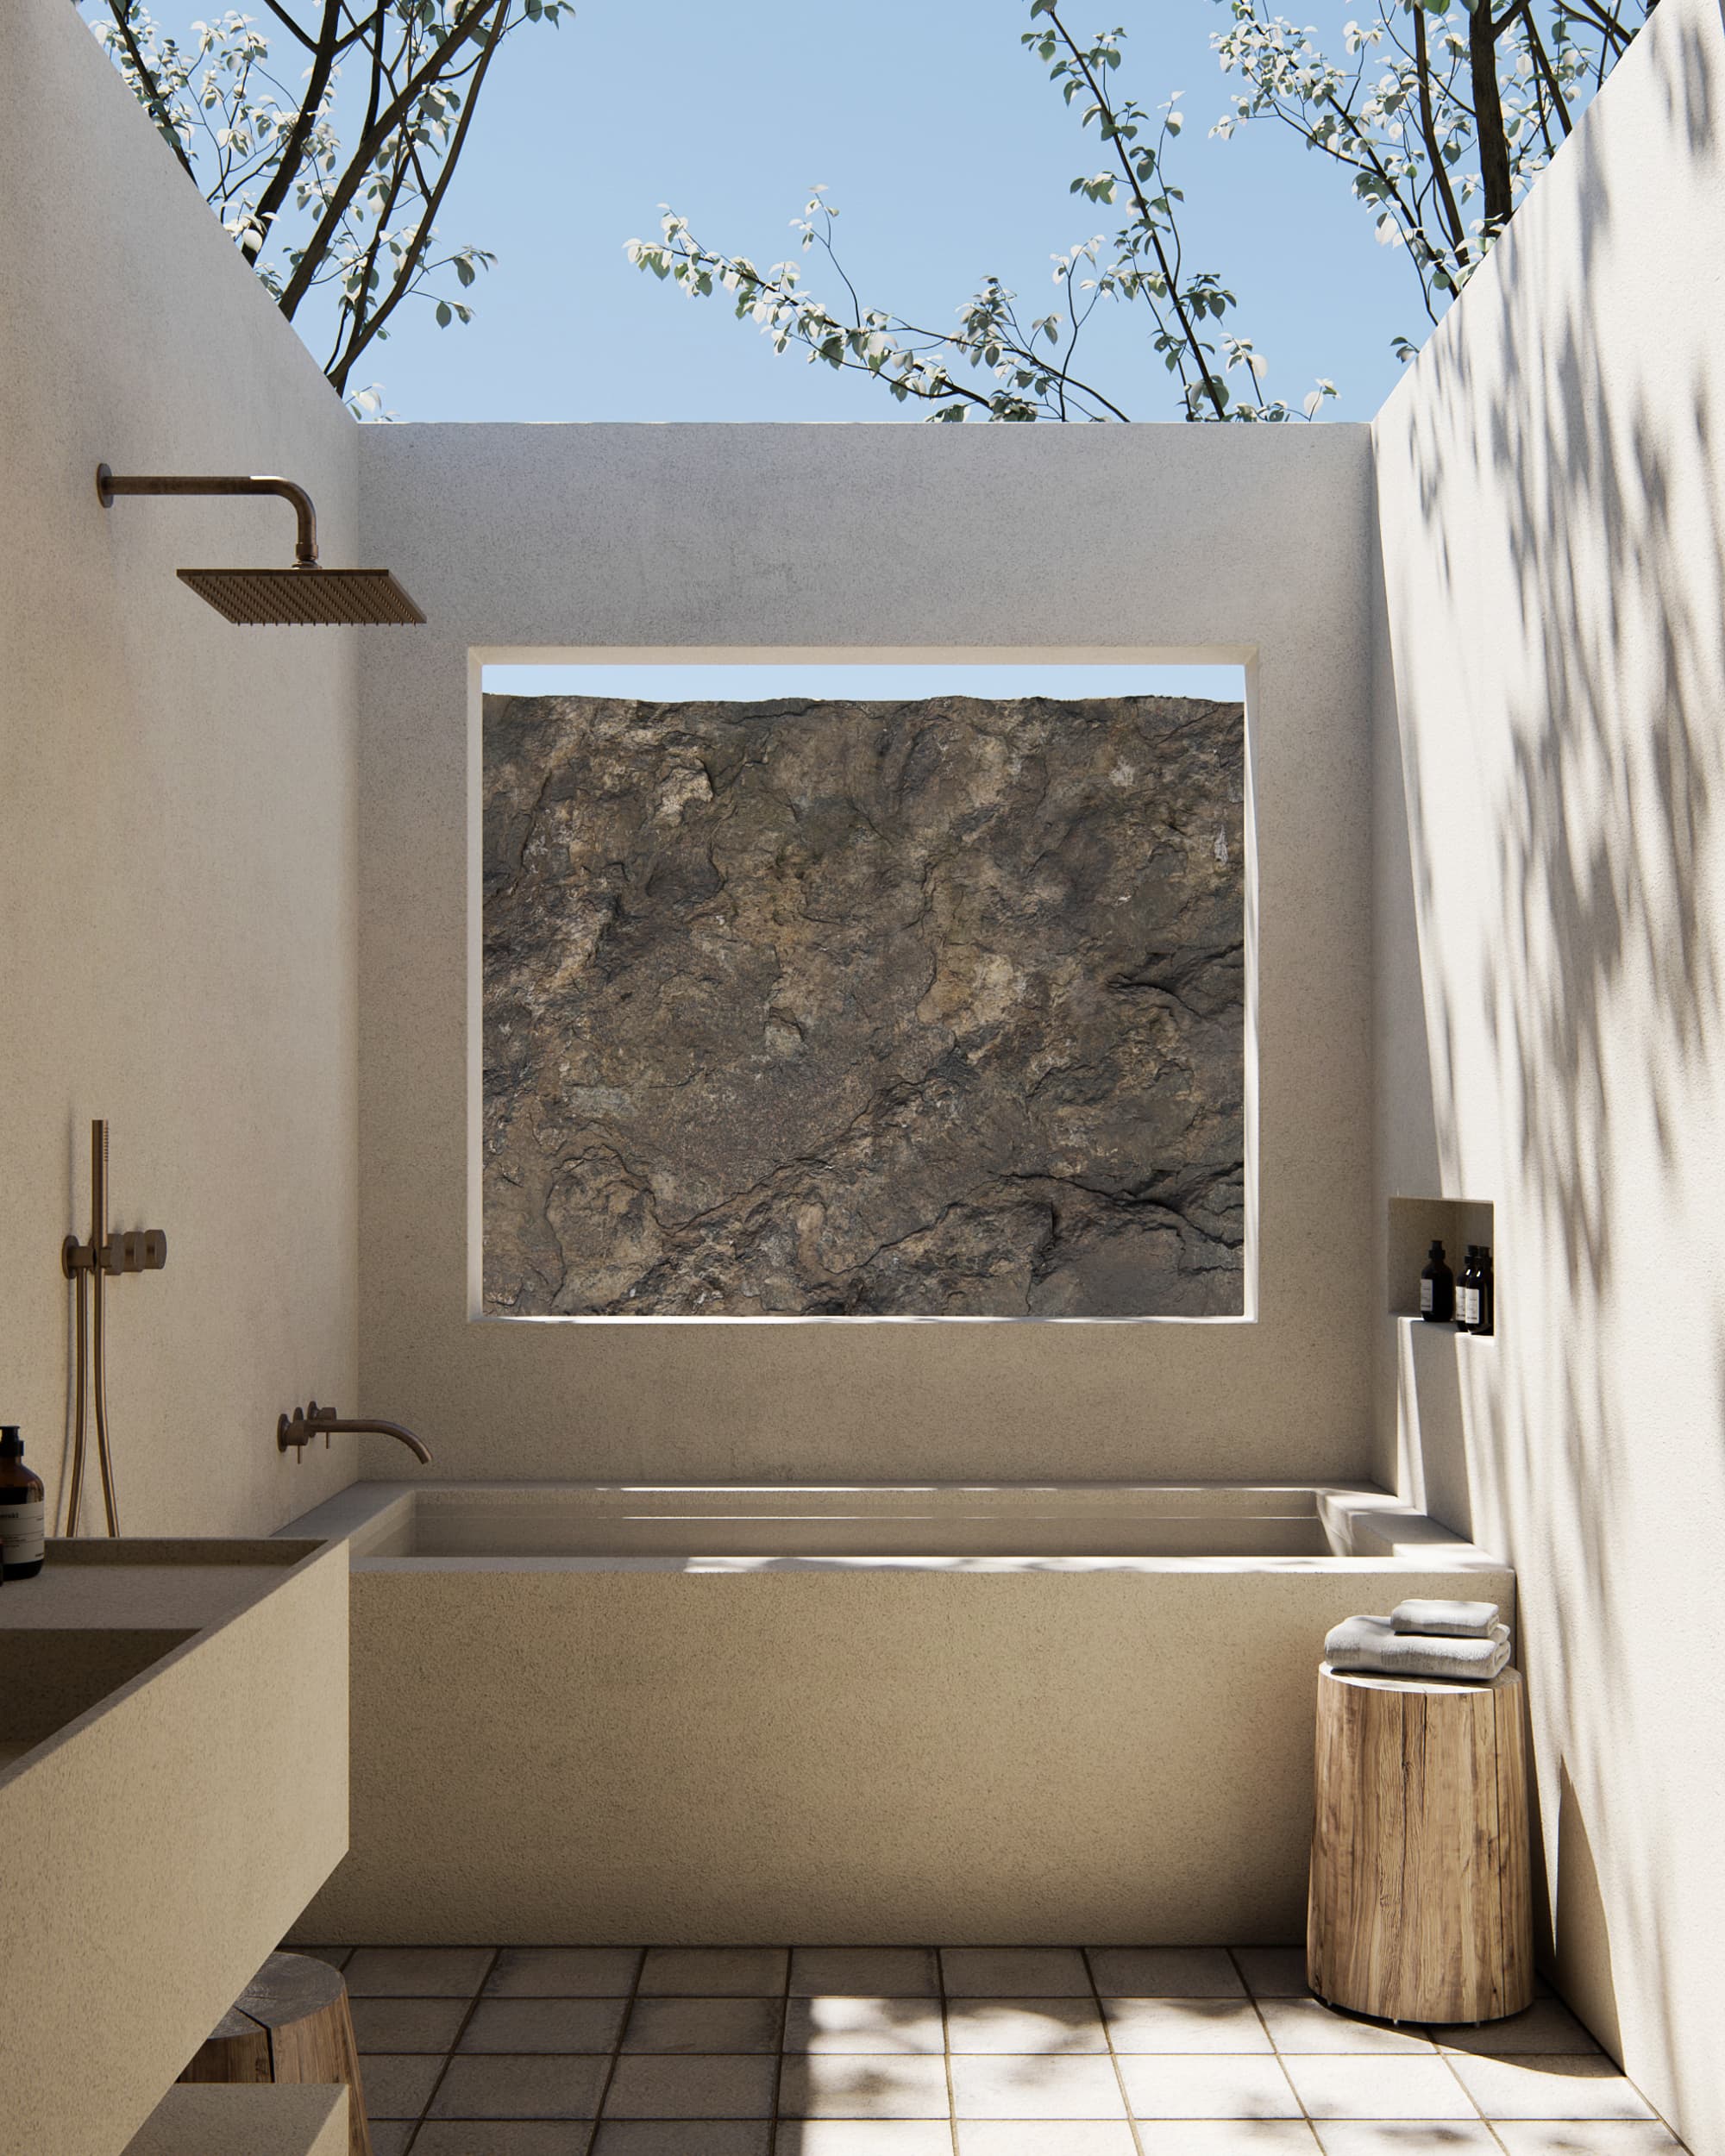 11 Beautiful Outdoor Bathrooms - Indoor/Outdoor Bathrooms Ideas